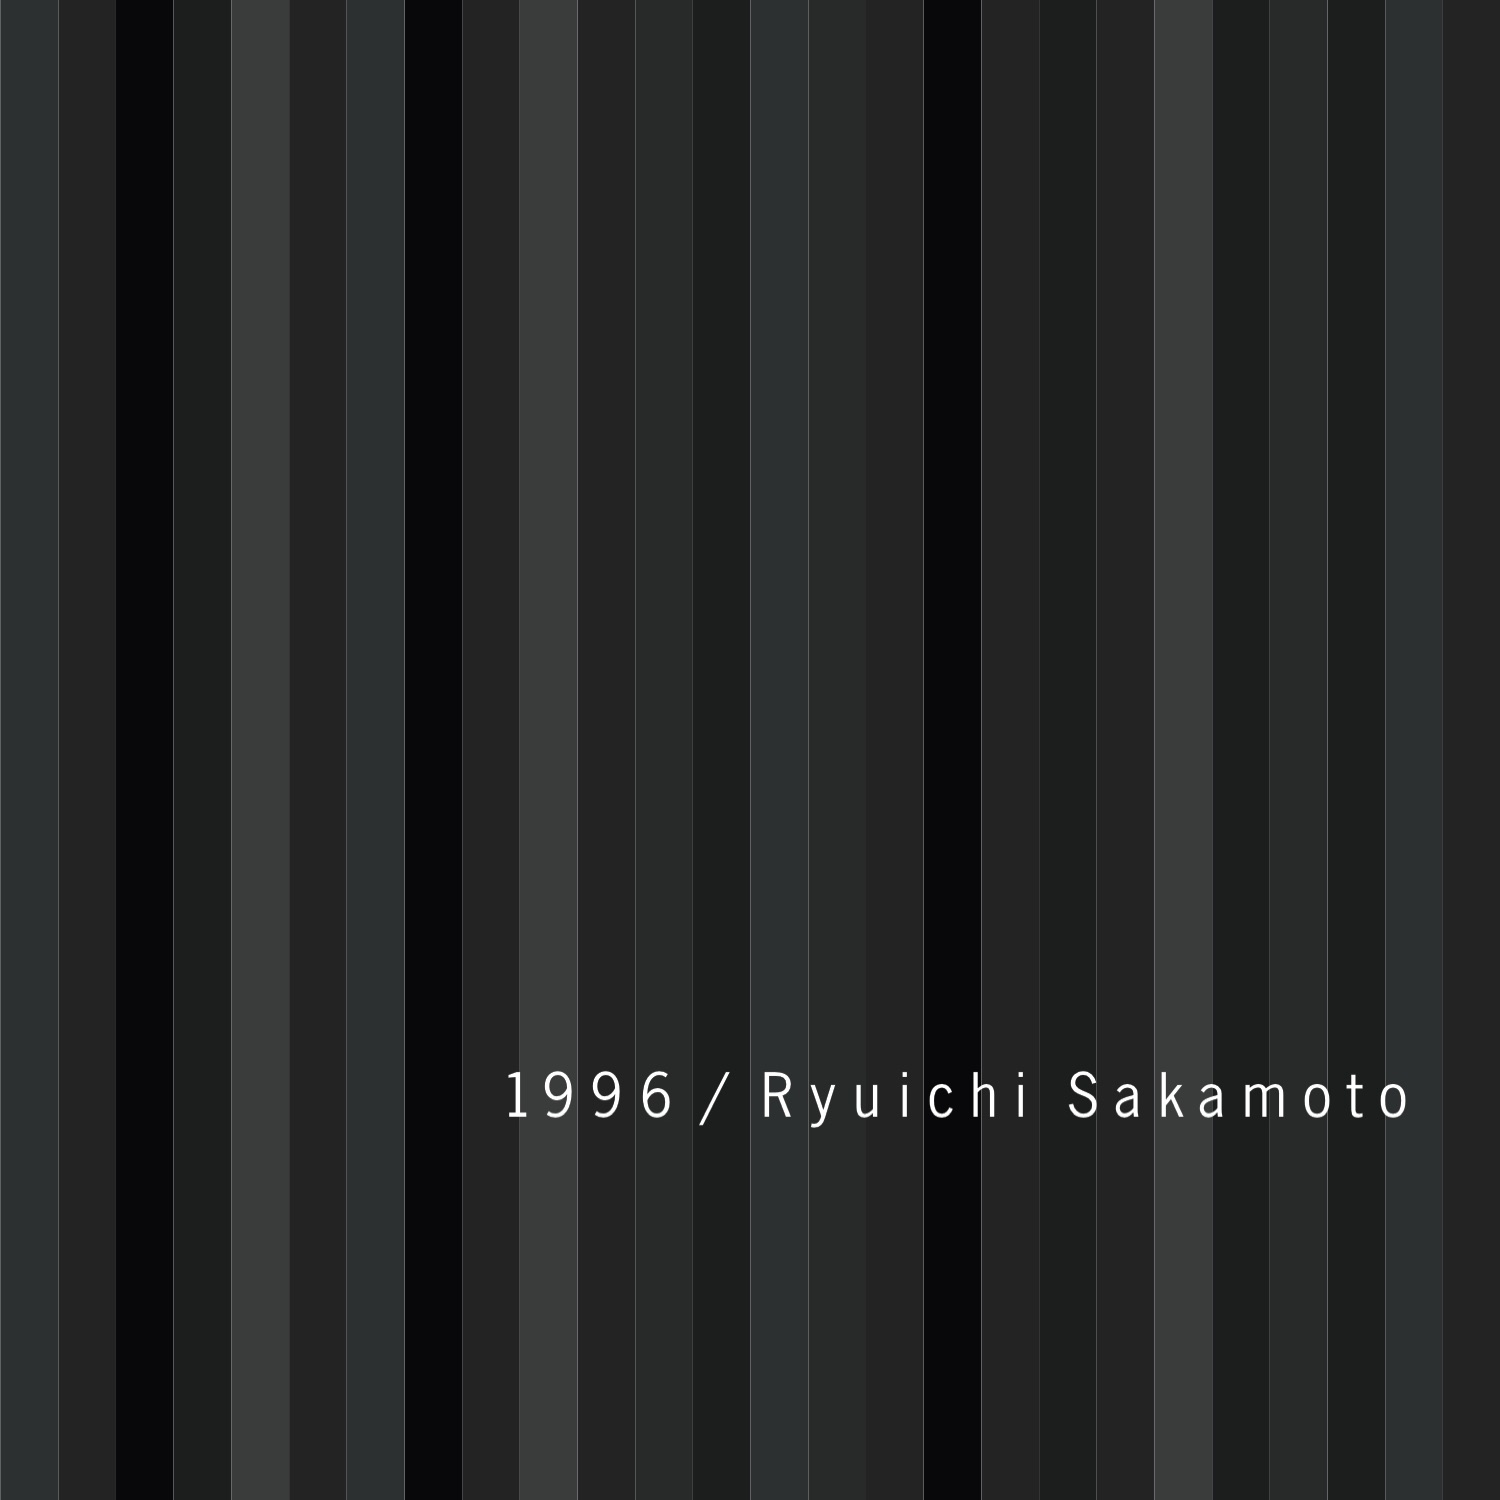 Playing The Piano Ryuichi Sakamoto Raritan